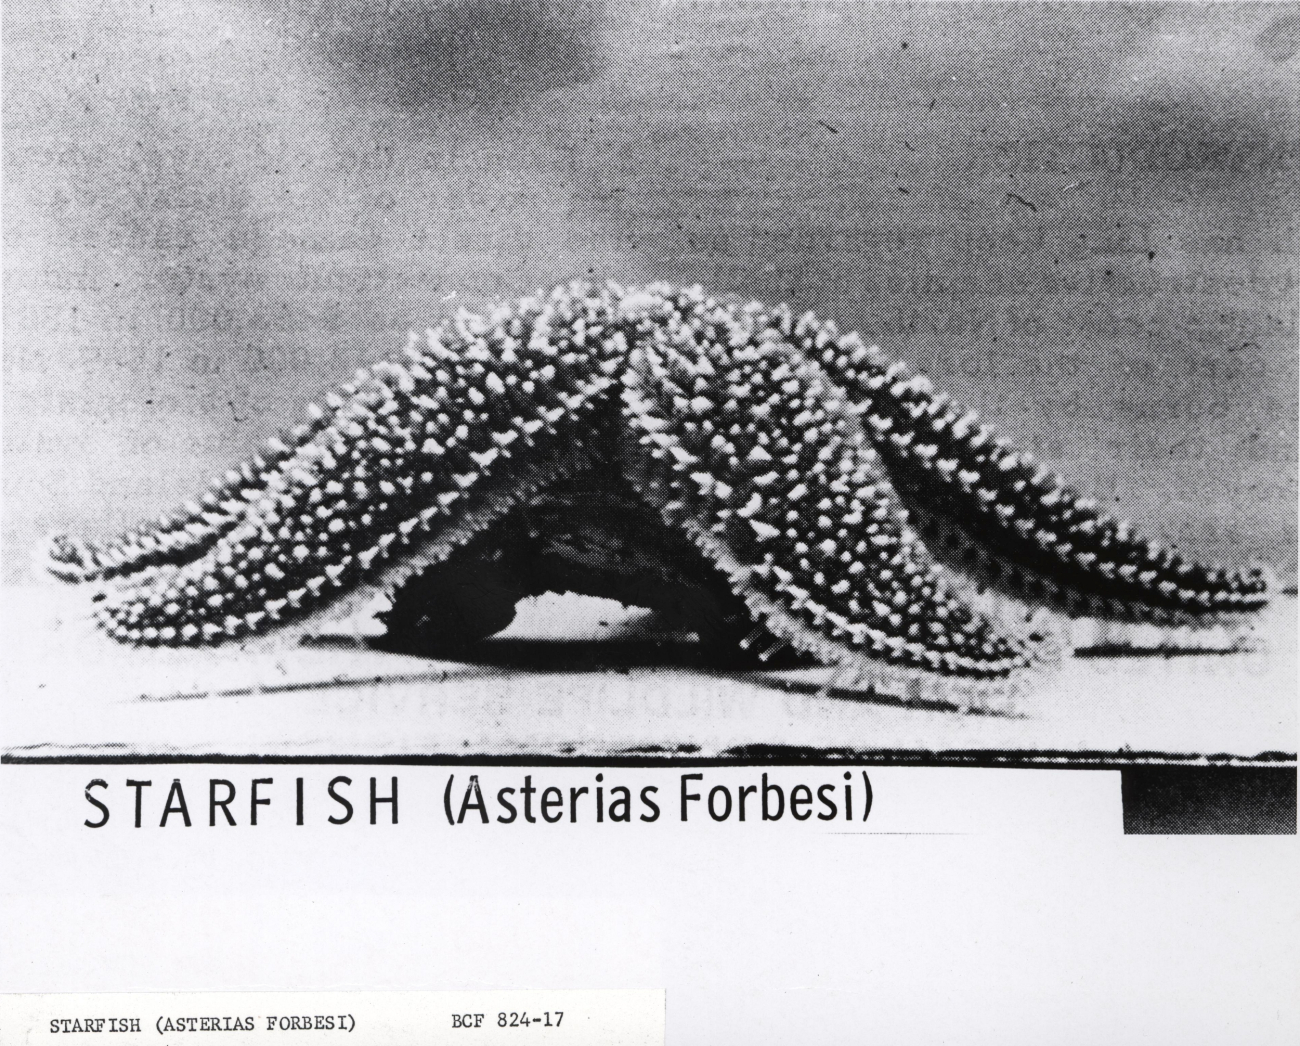 Starfish (Asterias forbesi)